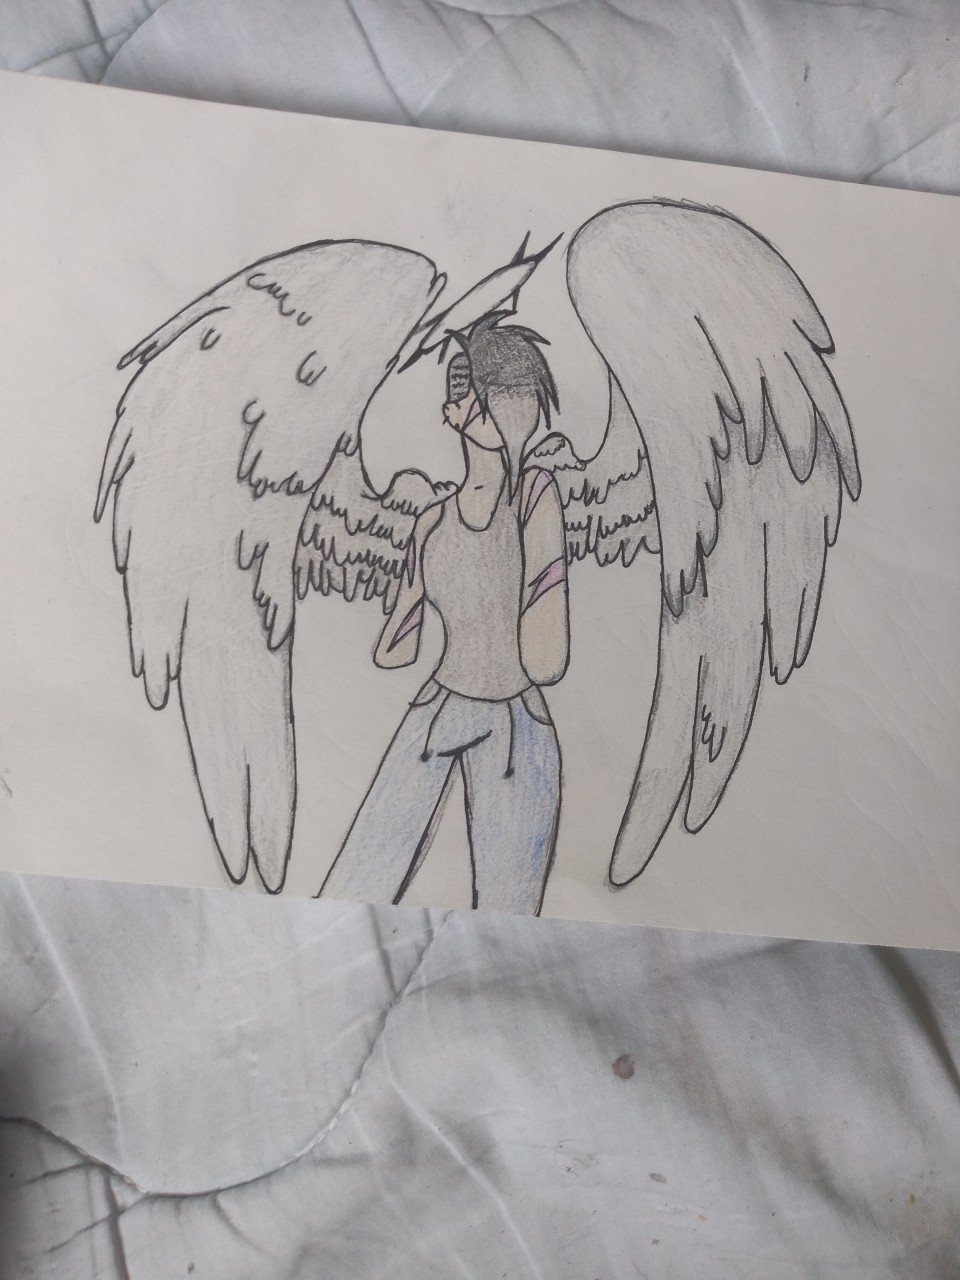 My Drawings - Fallen Angel :D - Wattpad